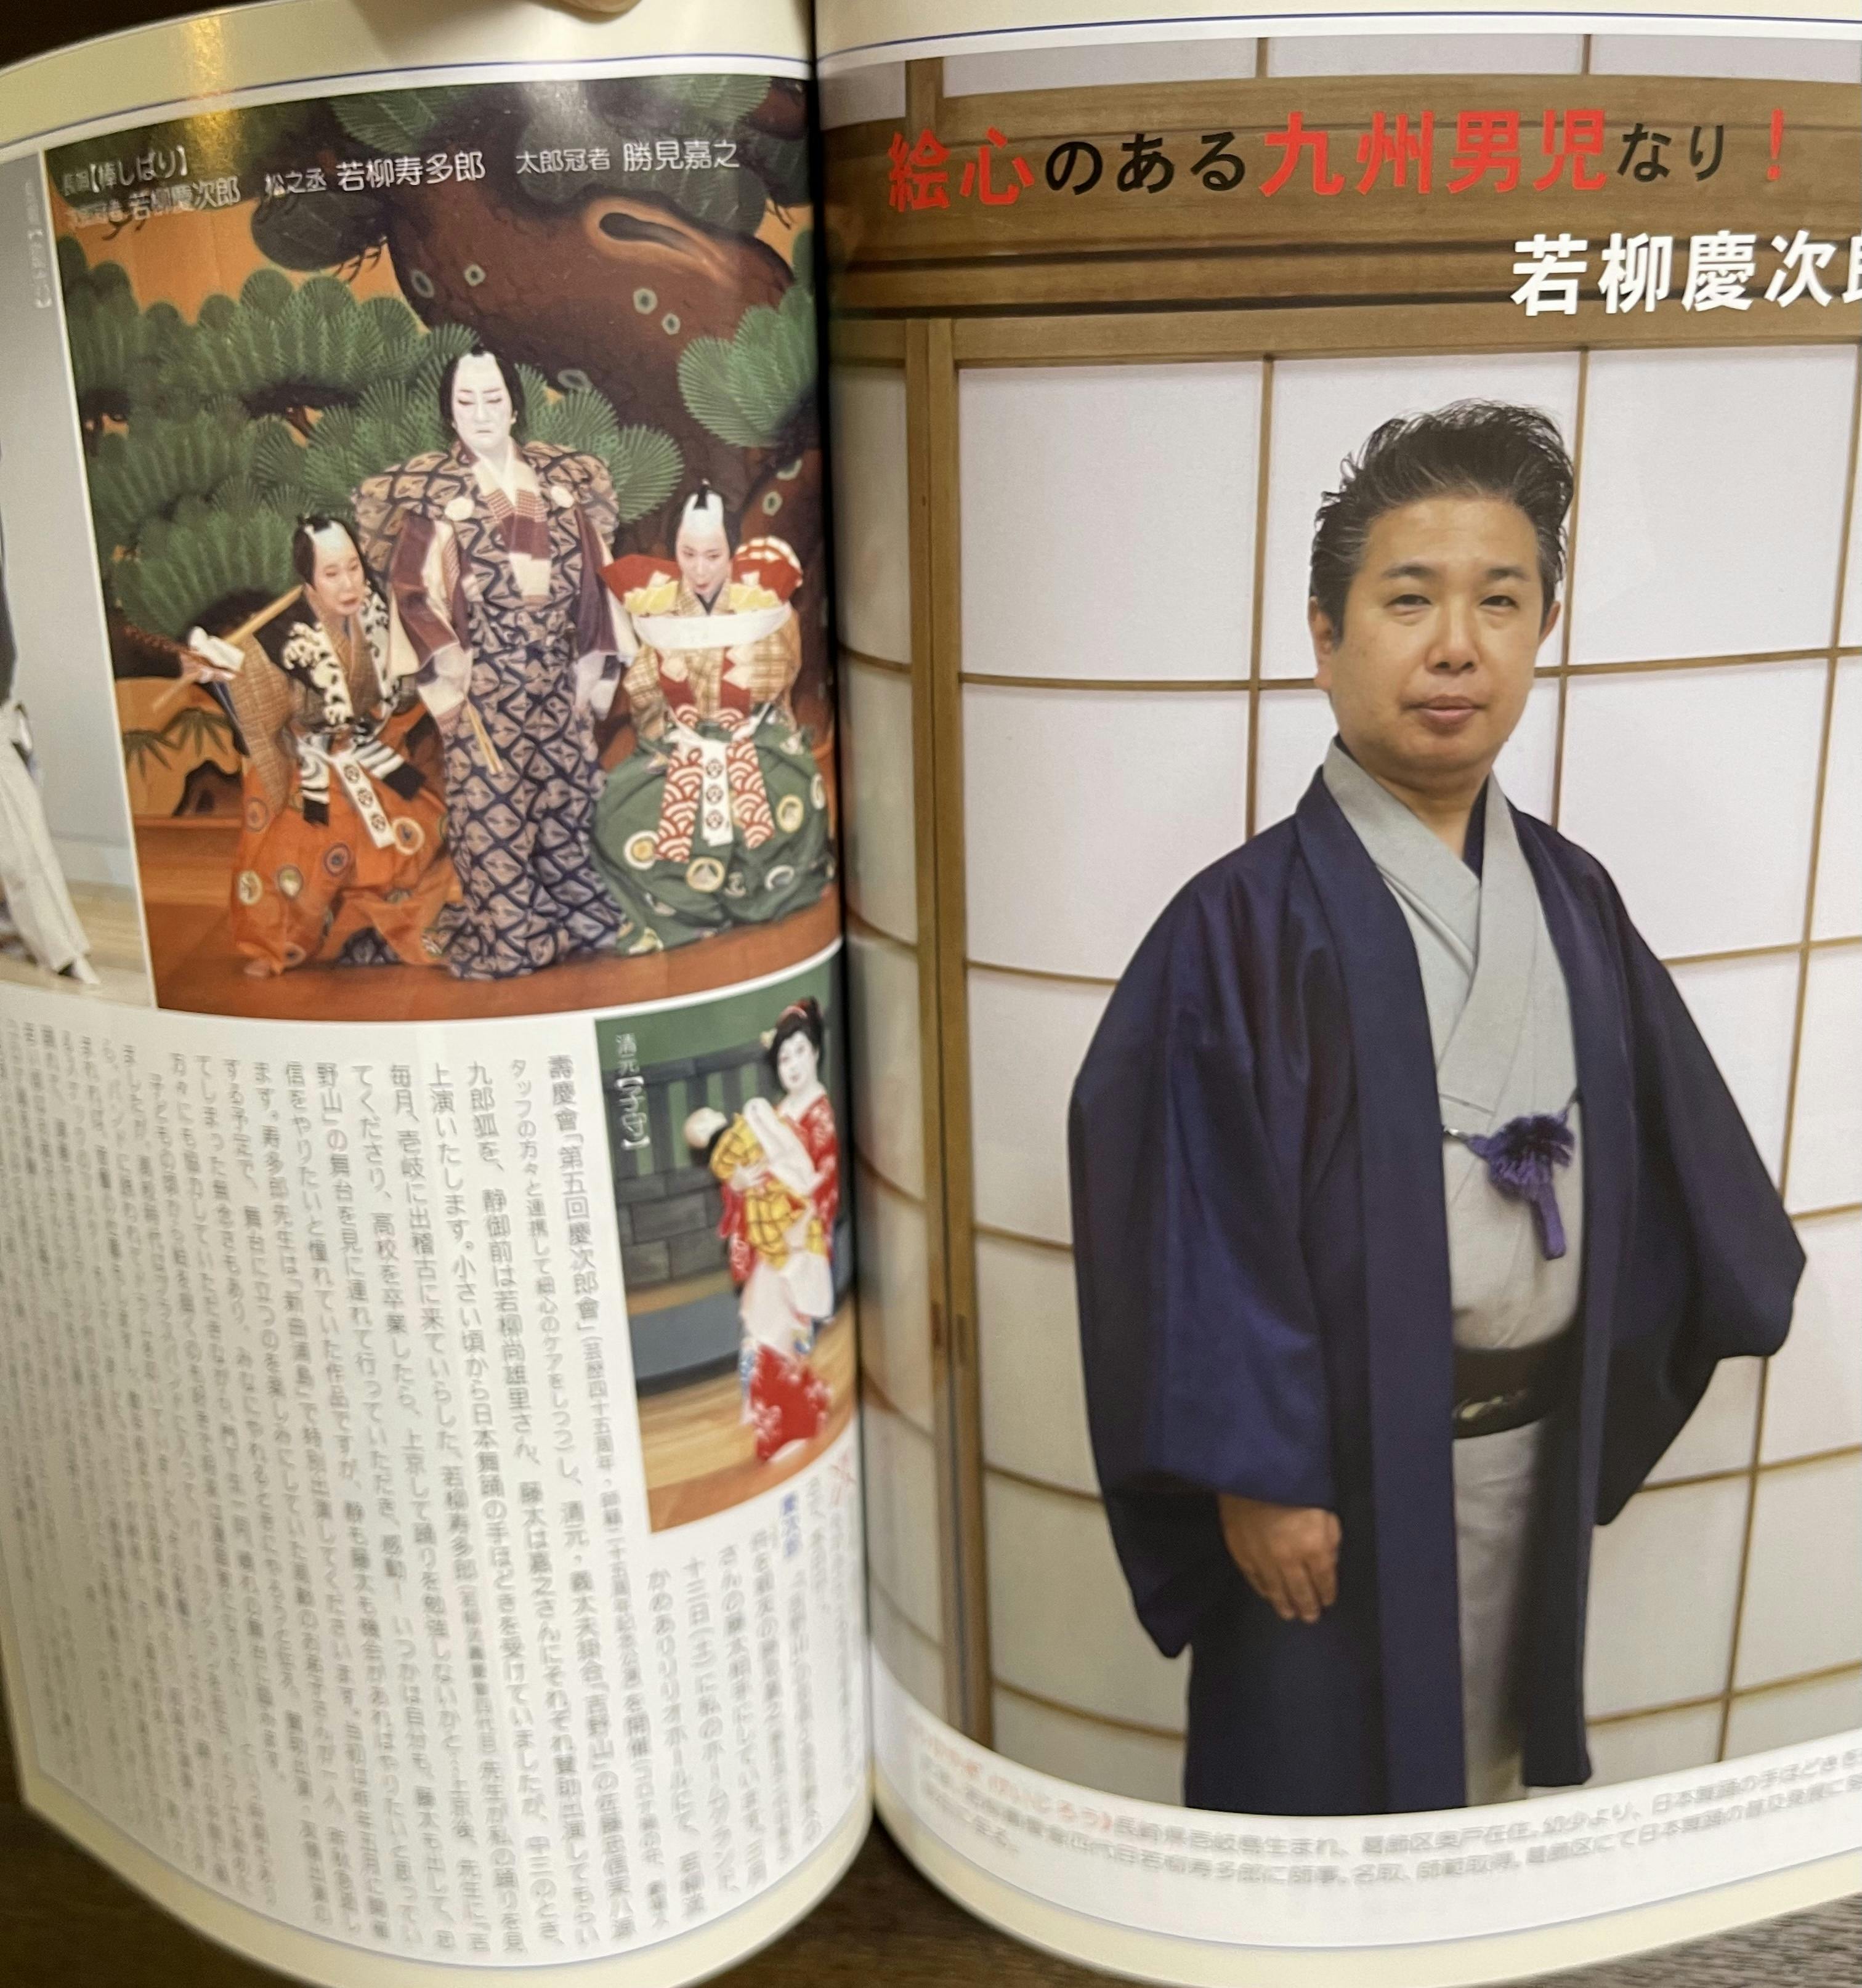 雑誌「日本舞踊」73巻に若柳慶次郎が掲載されました - CAMPFIRE